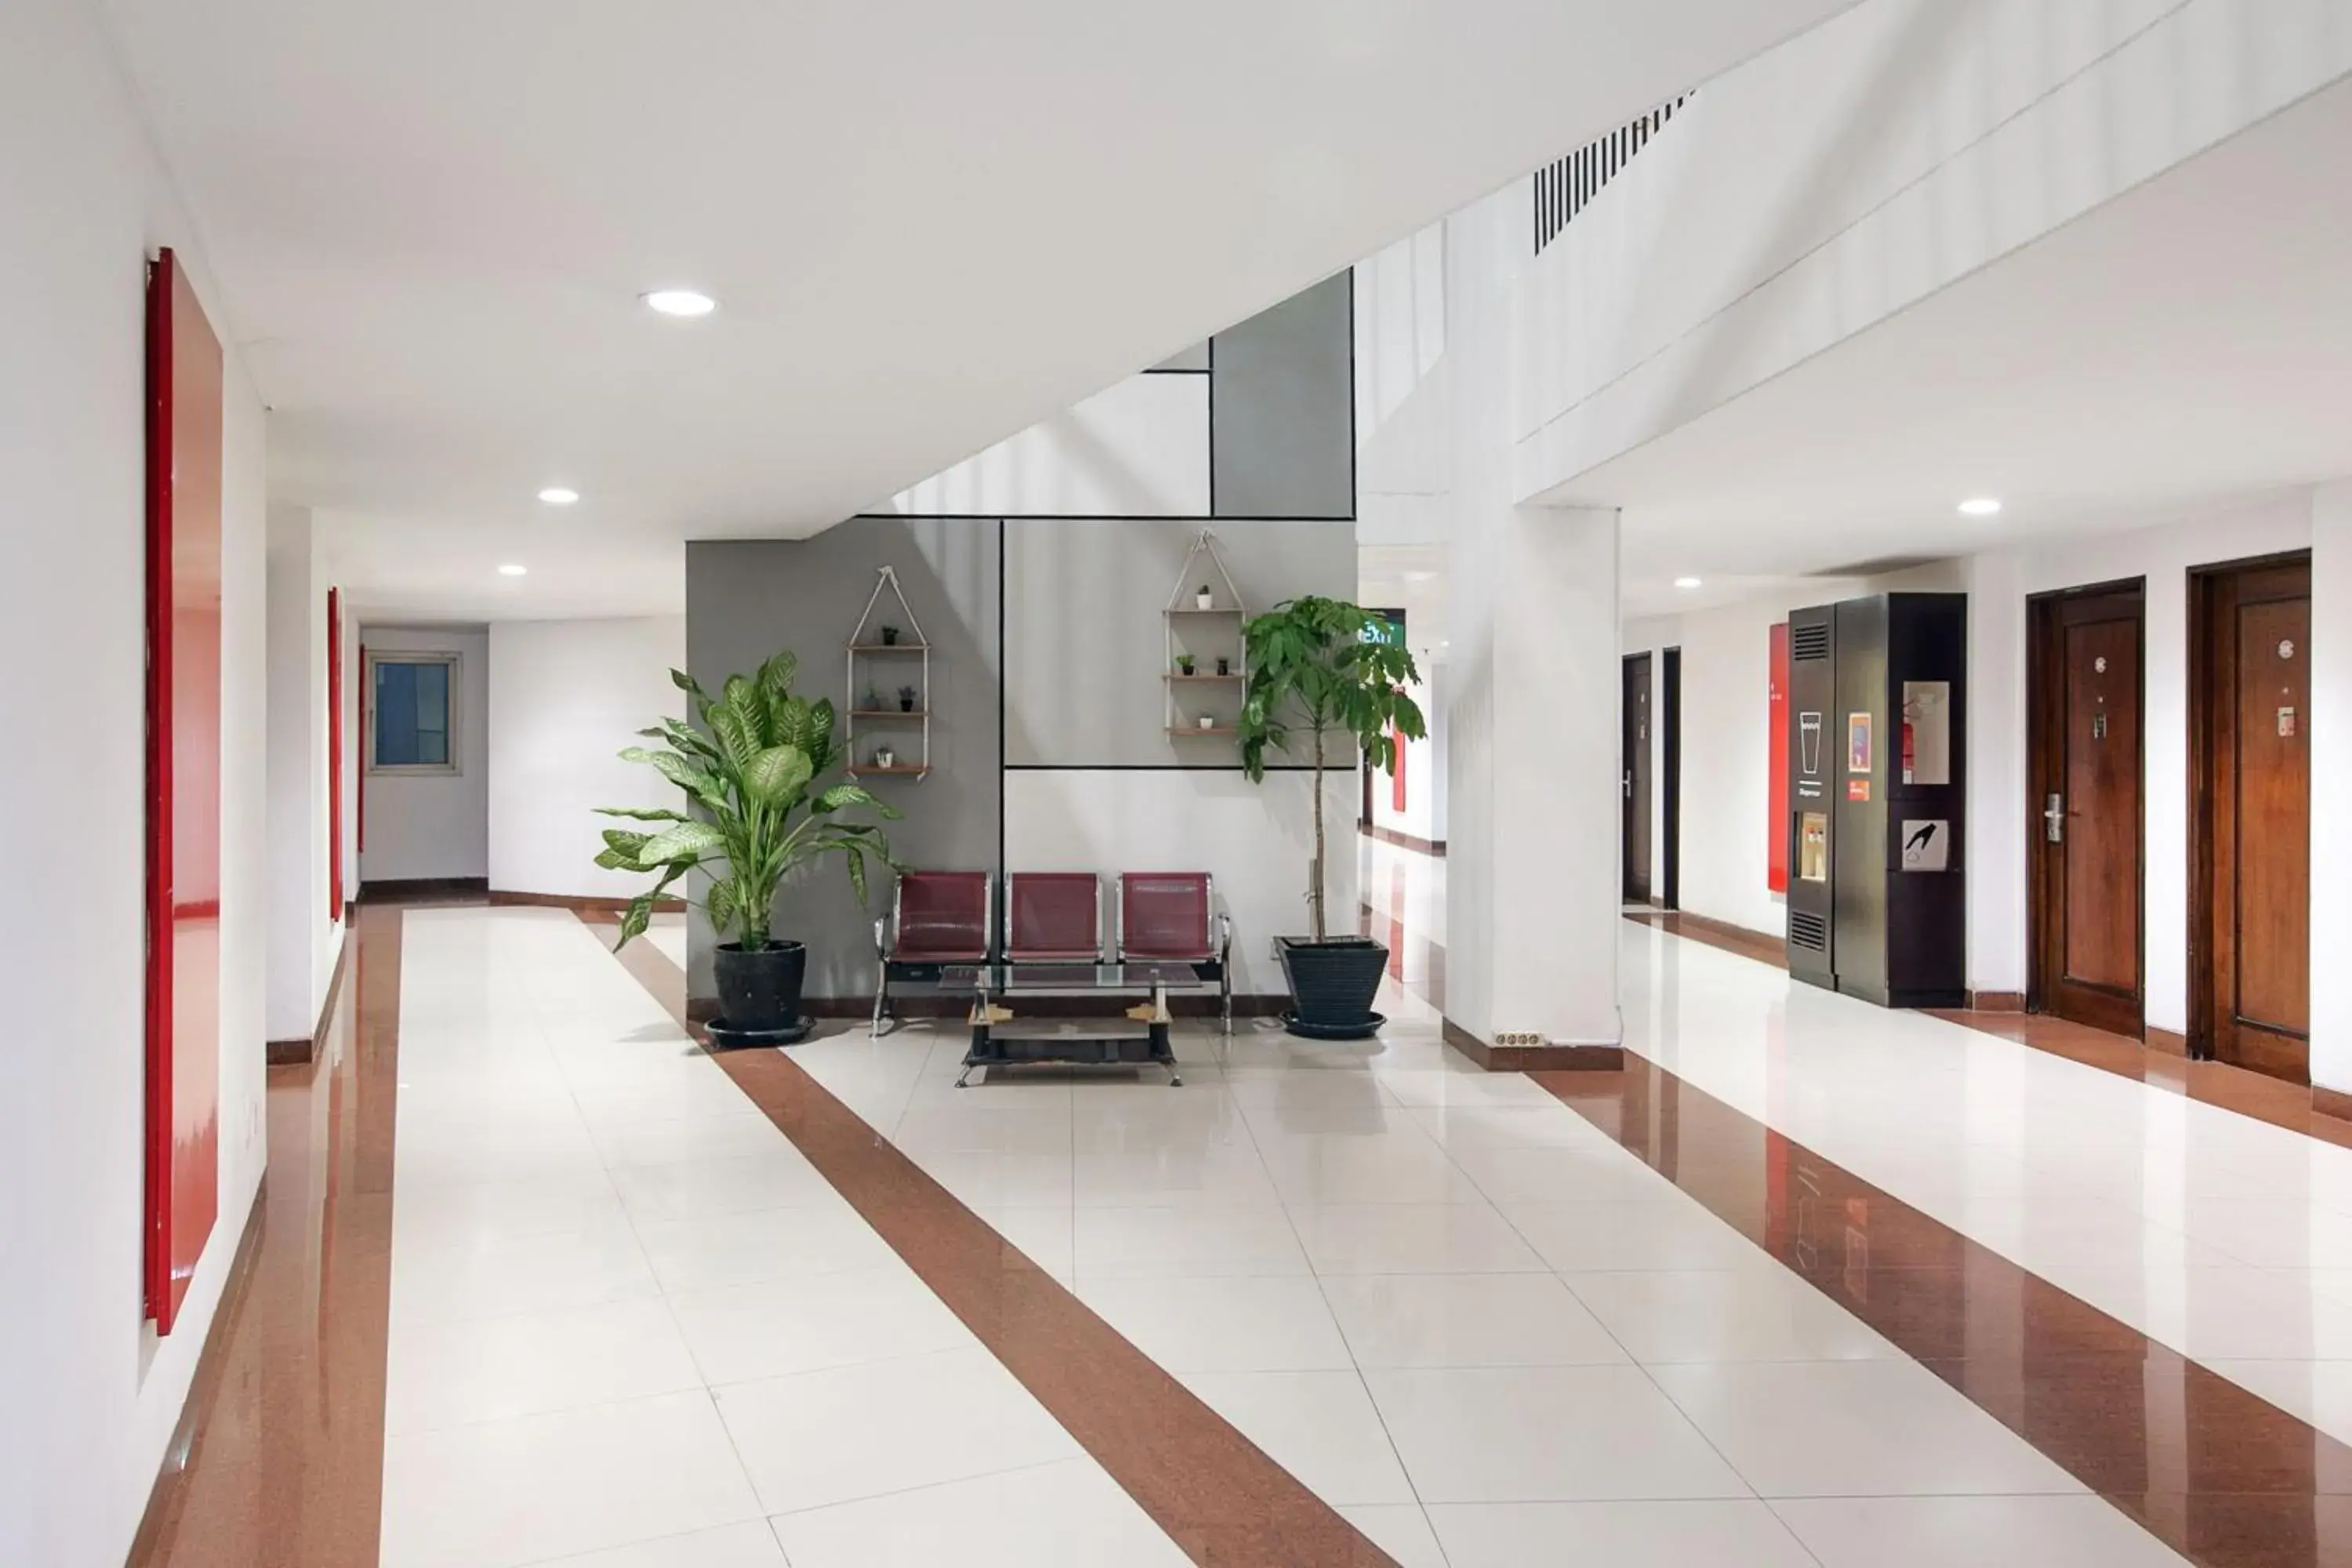 Lobby or reception, Lobby/Reception in Amaris Hotel Bandara Soekarno Hatta